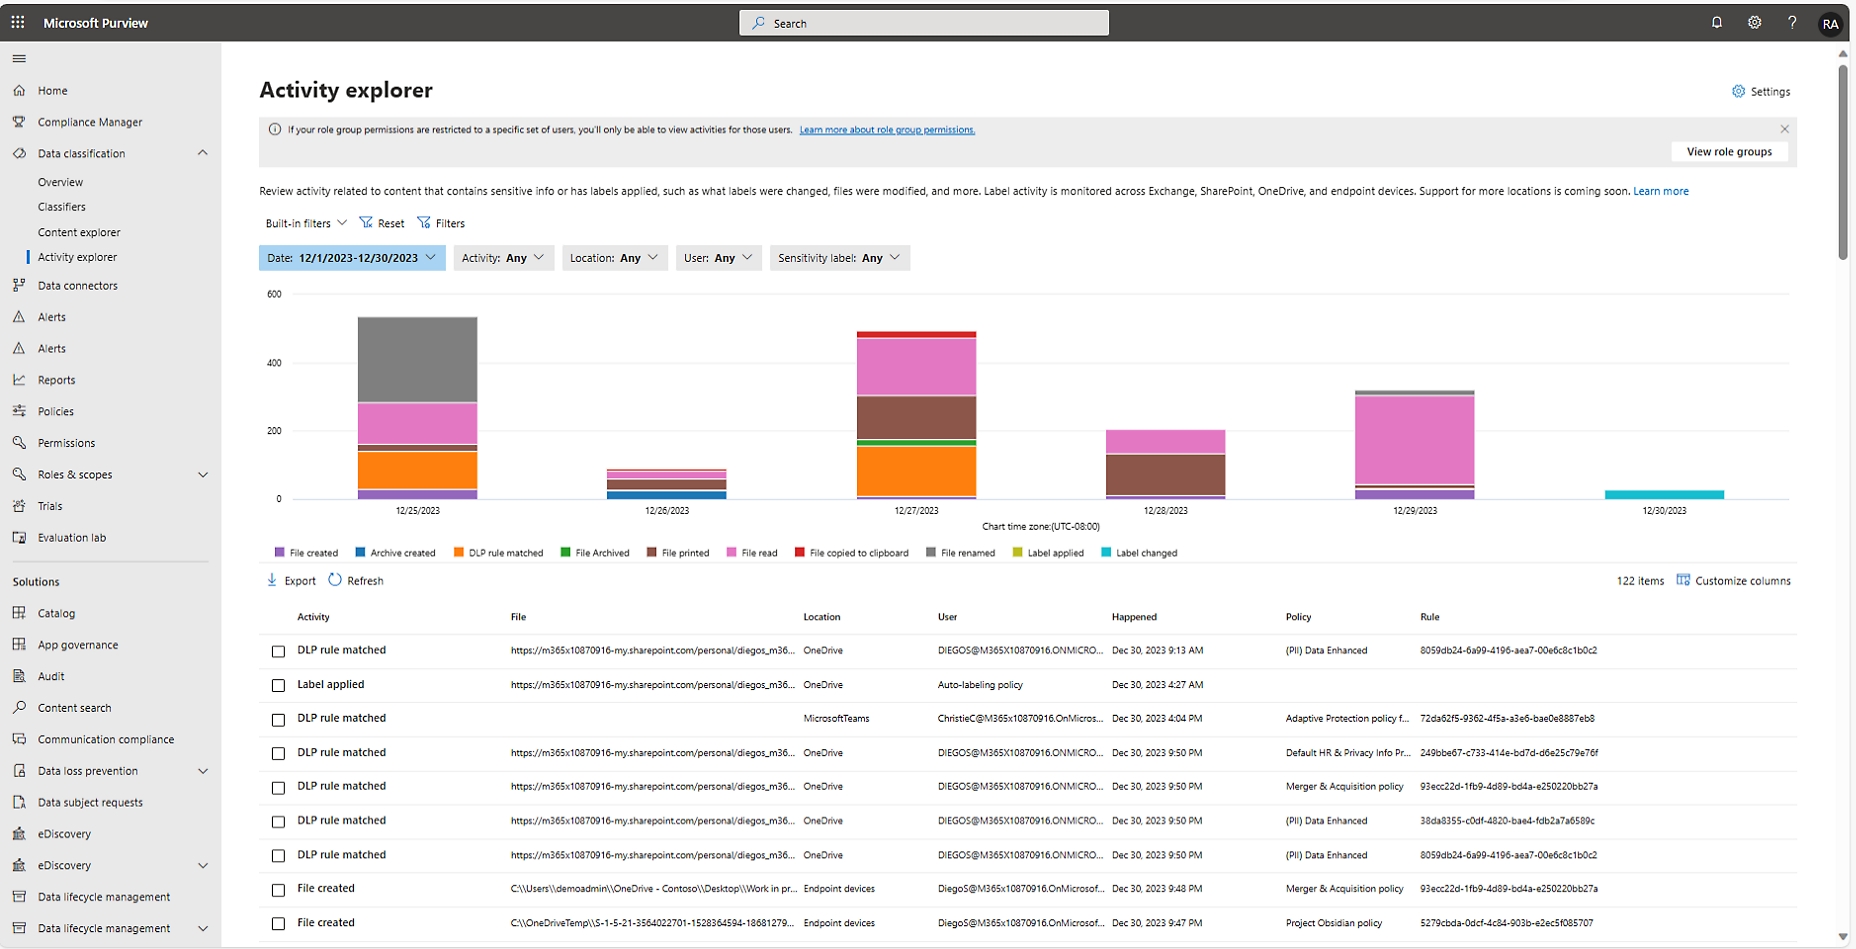 Interfaz del explorador de actividades del Centro de partners de Microsoft, que muestra un gráfico y una tabla con datos sobre las actividades de los usuarios.